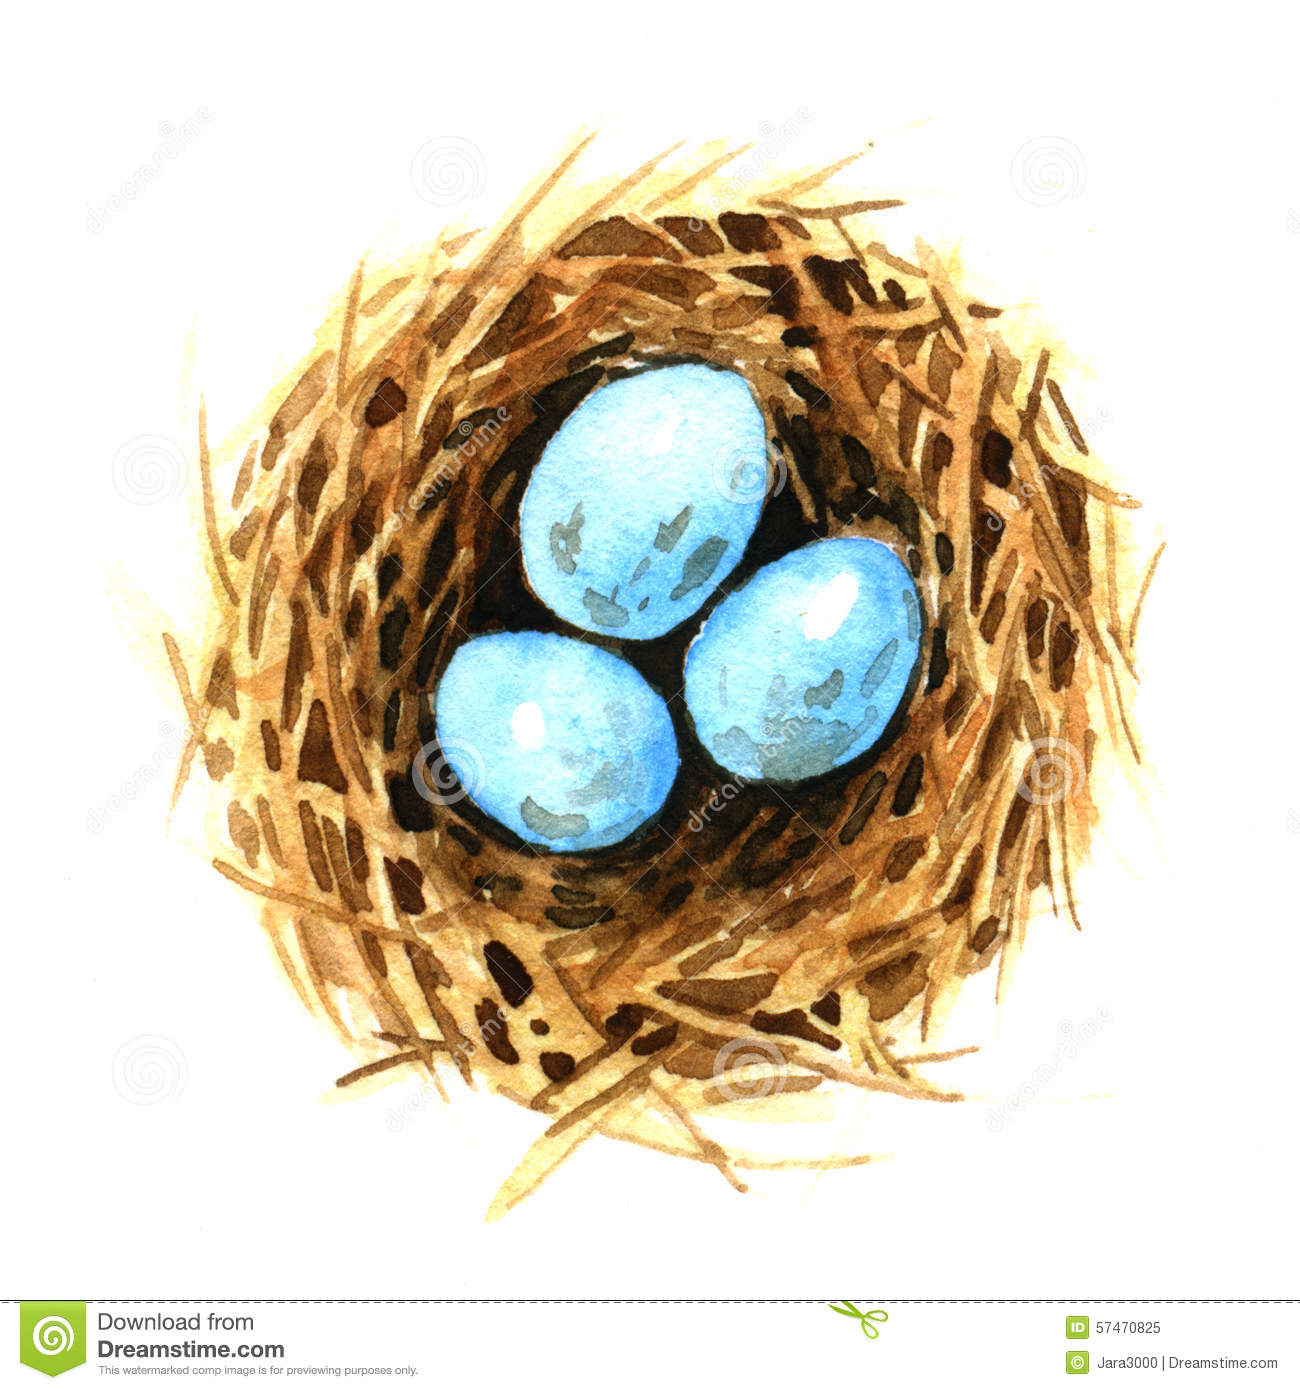 Birds nest with eggs clipart.